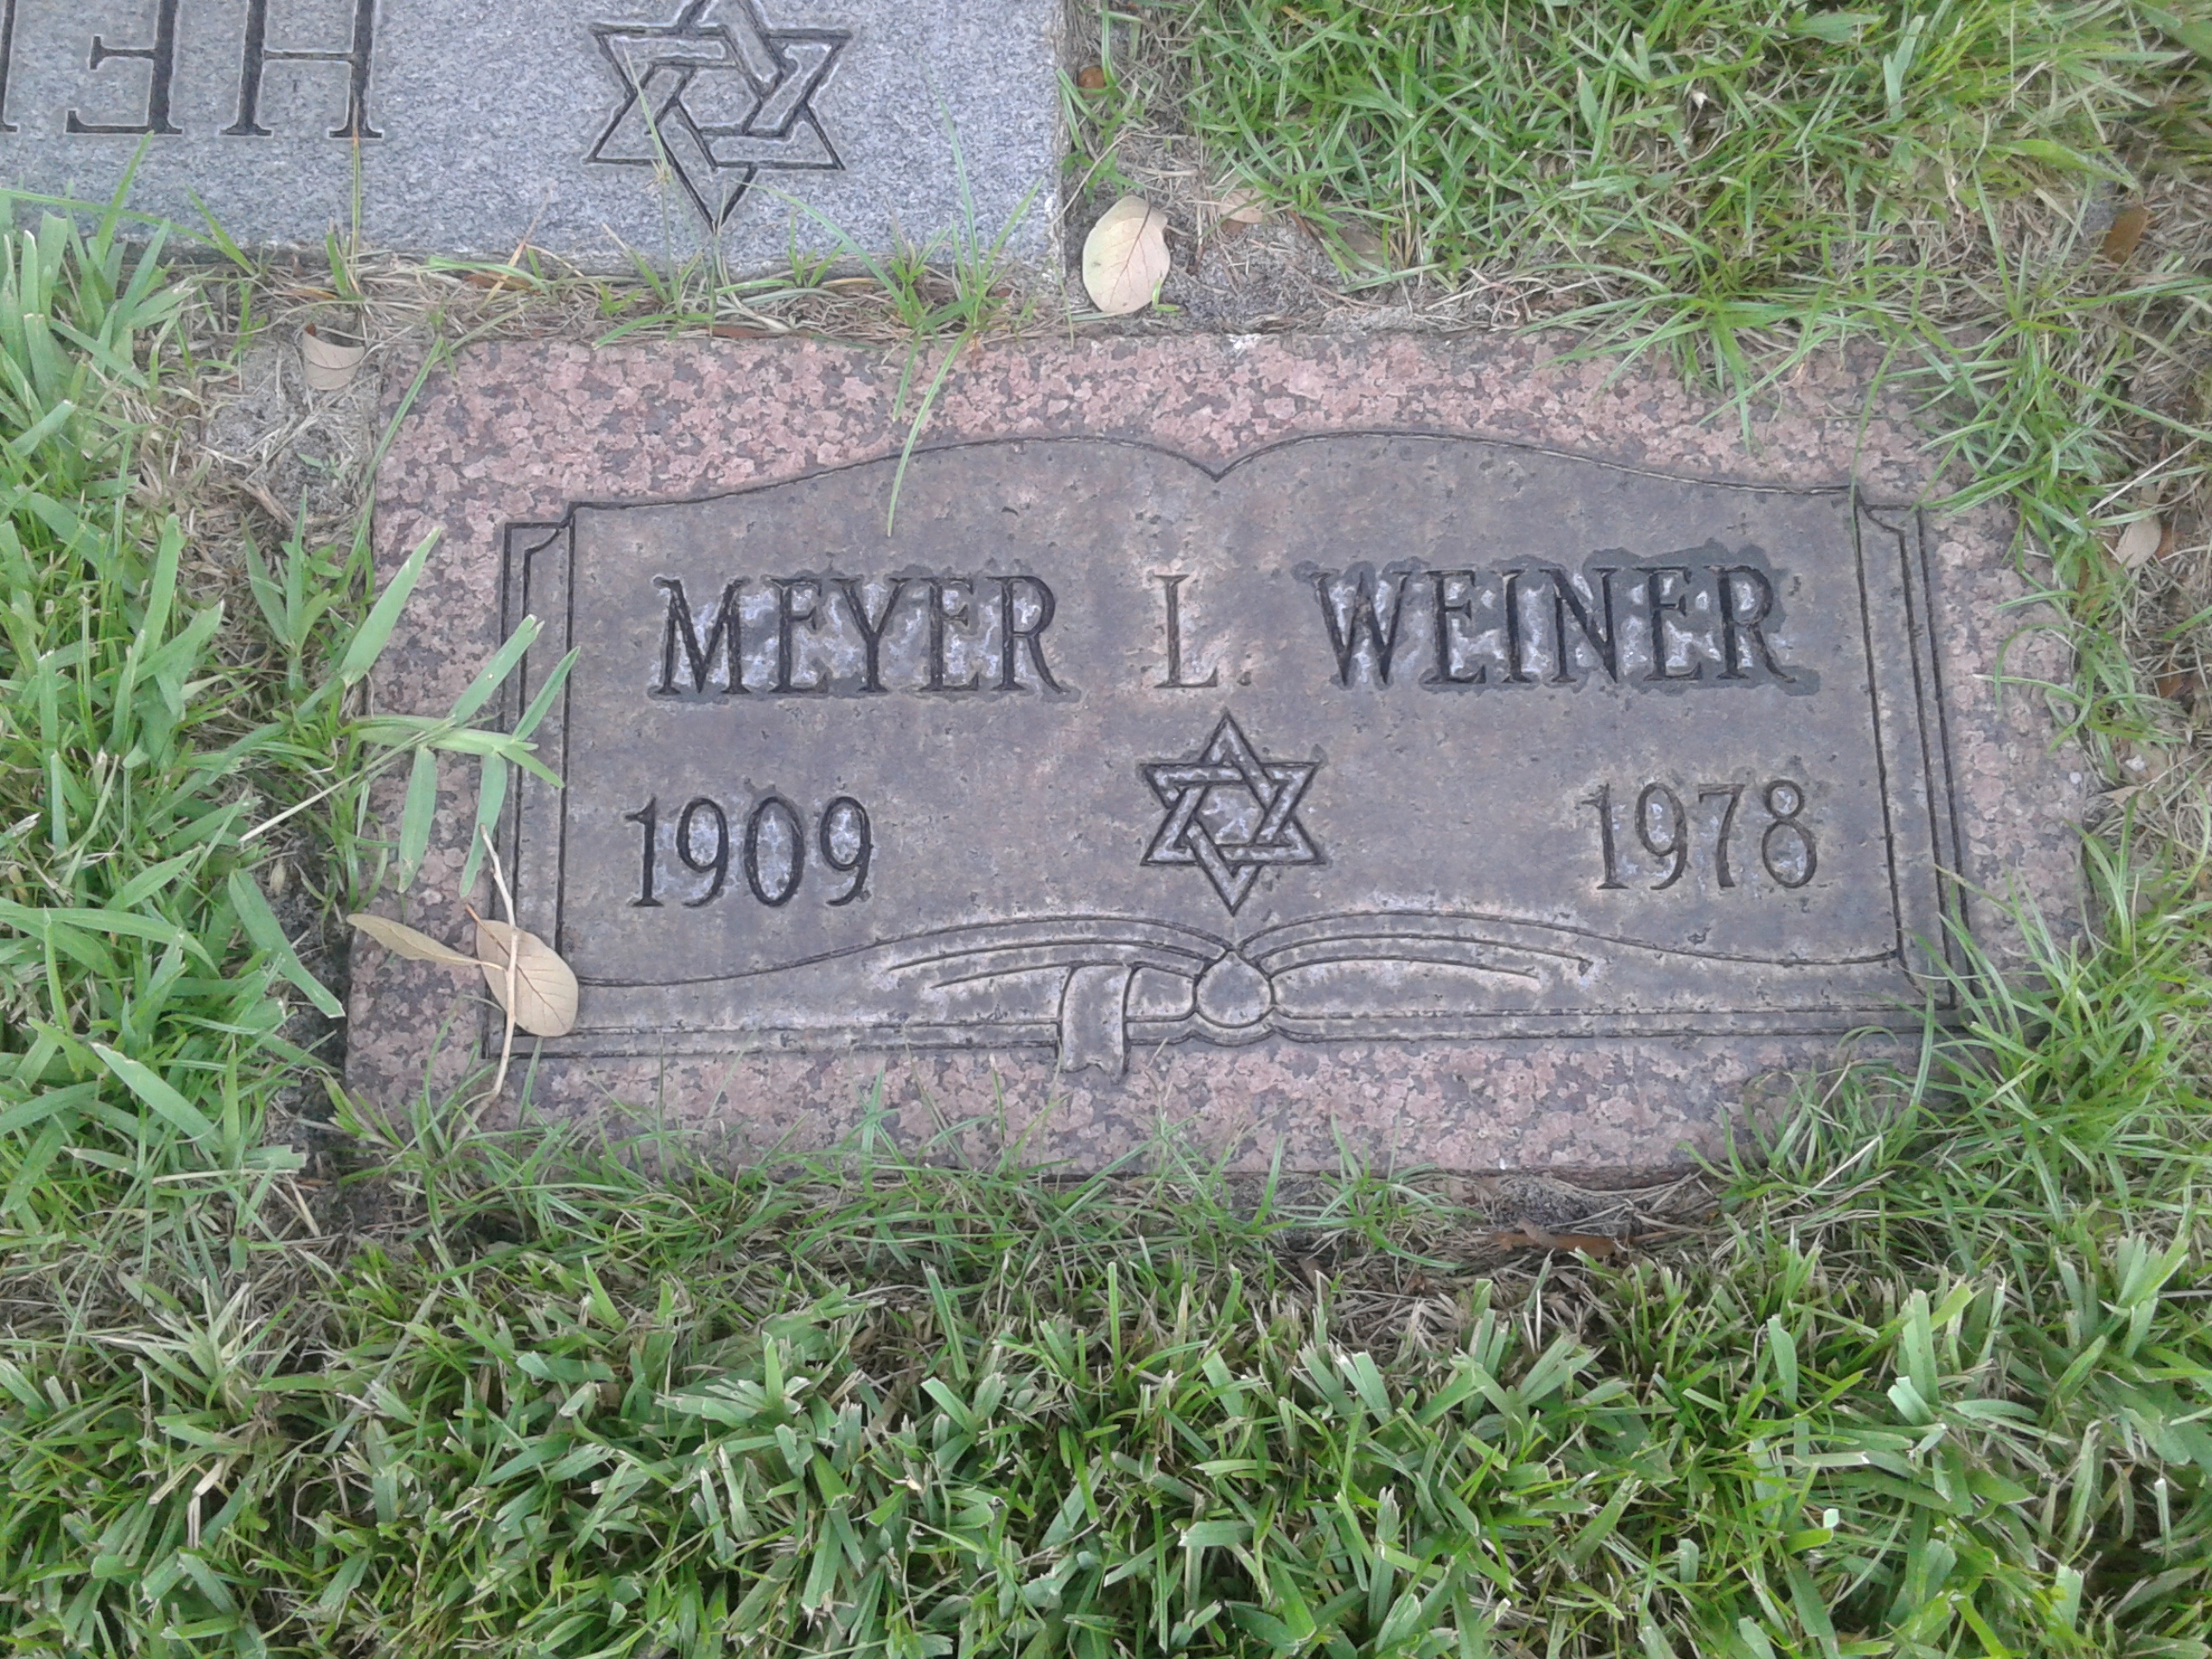 Meyer L Weiner